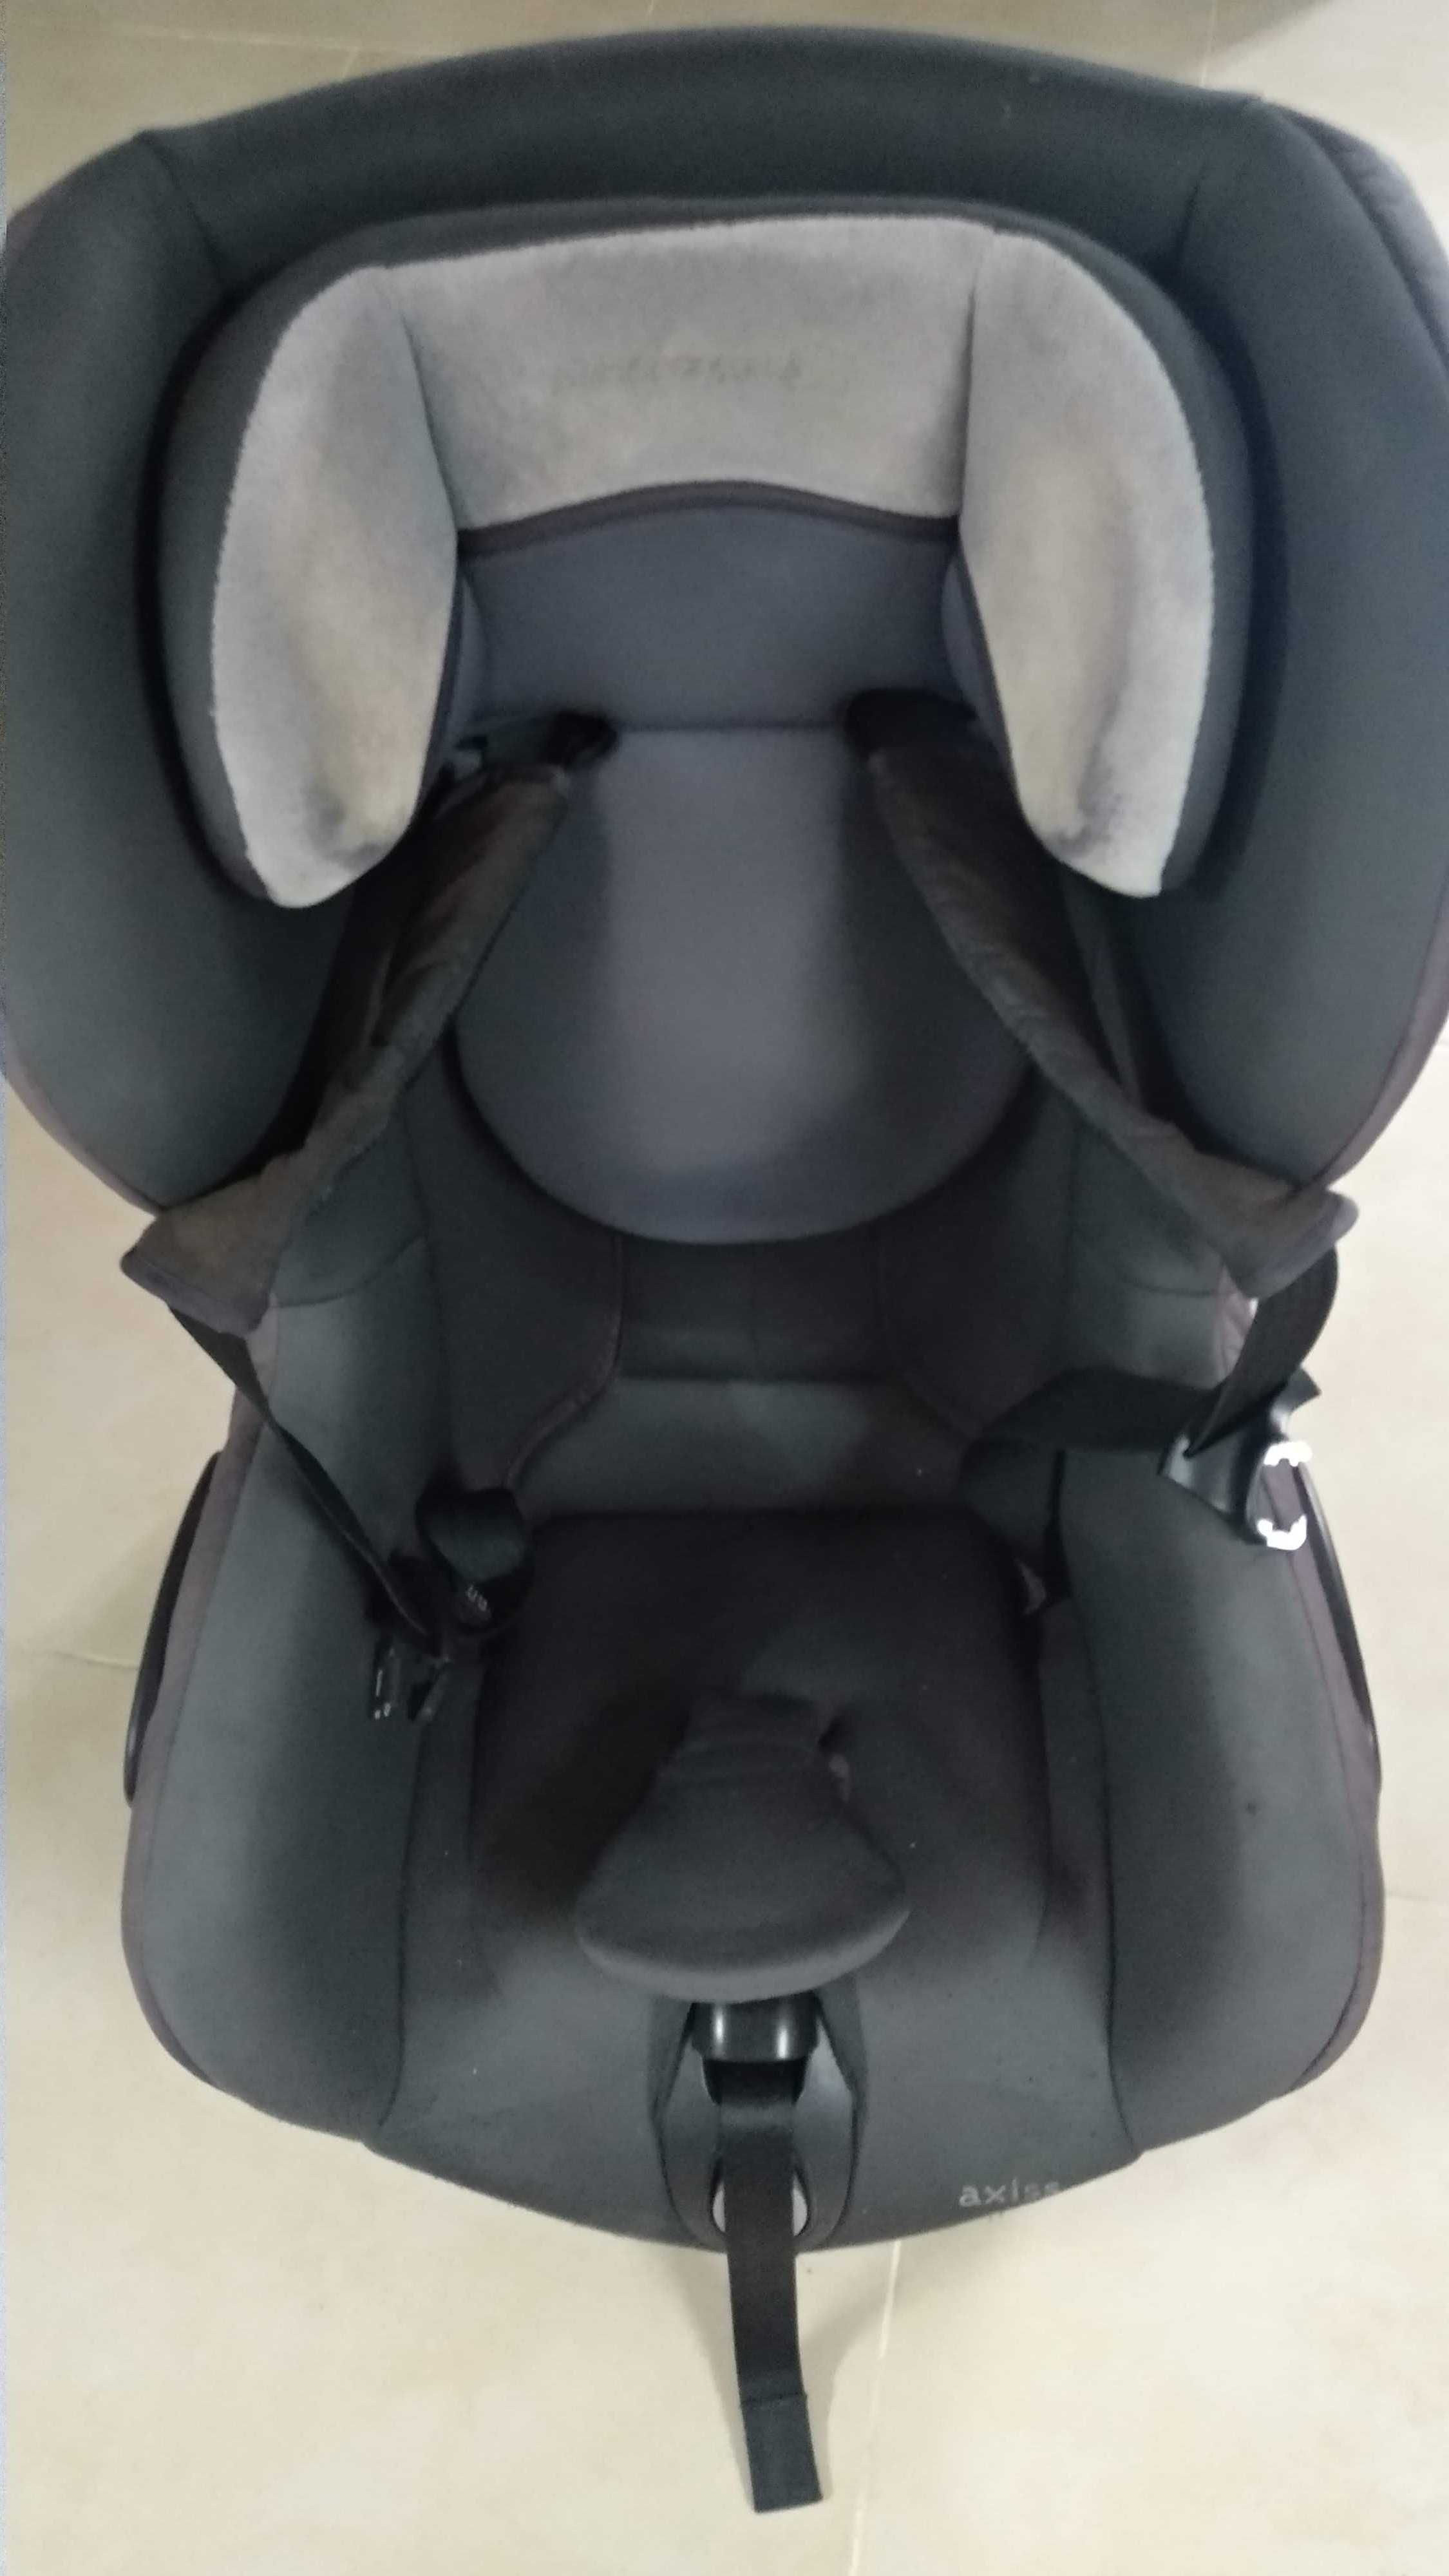 Cadeira Auto Bébé confort Axiss roda para o lado NAO NEGOCIAVEL